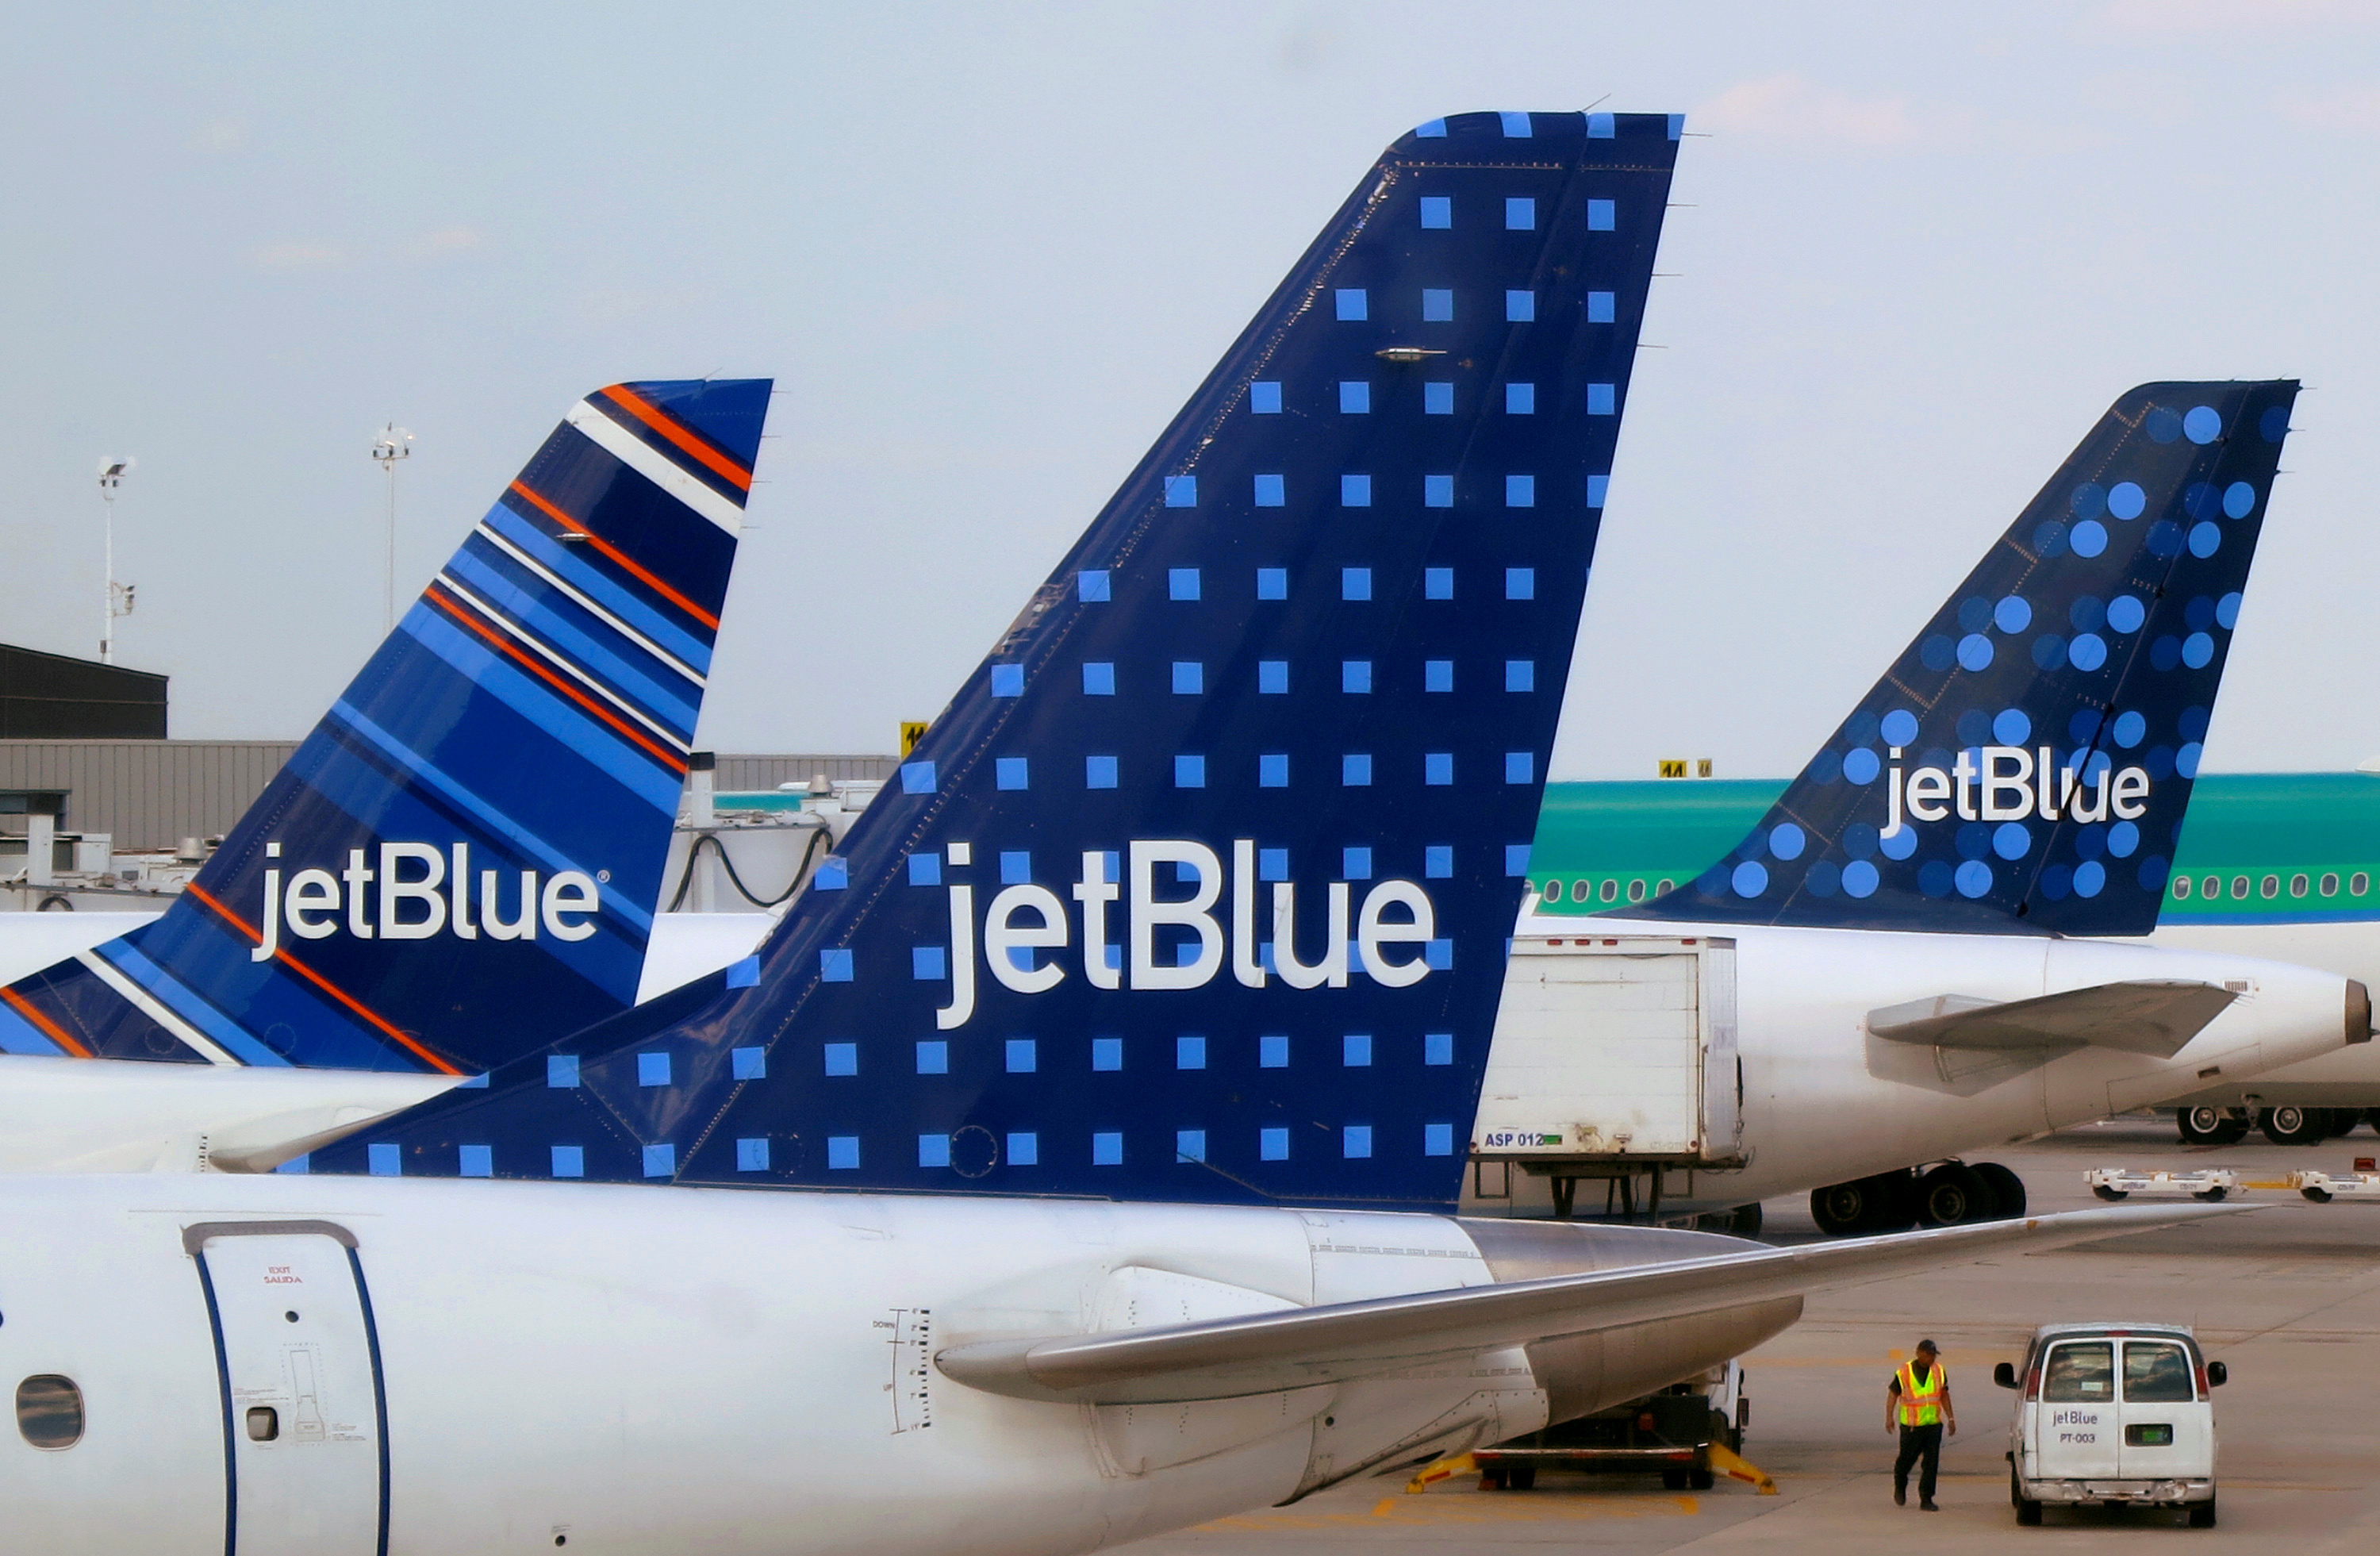 La low-cost américaine JetBlue déboule entre Paris et New York en cassant les prix